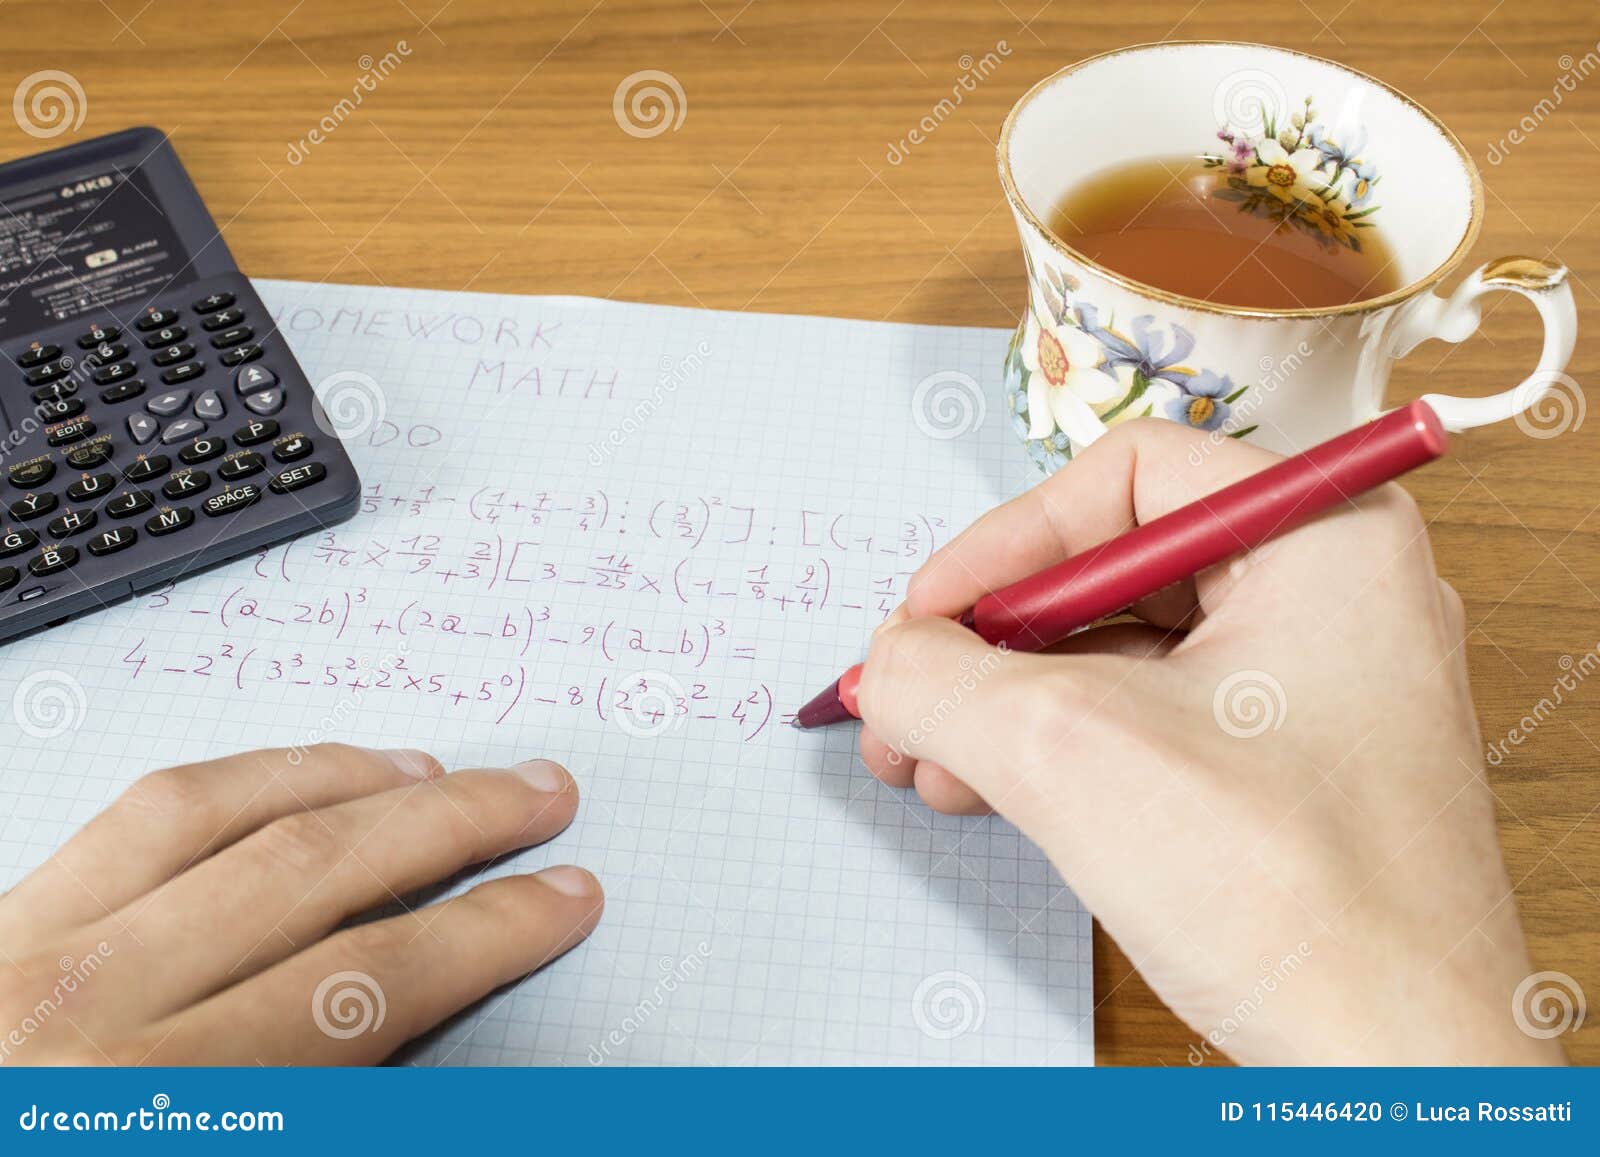 Do math homework in pen